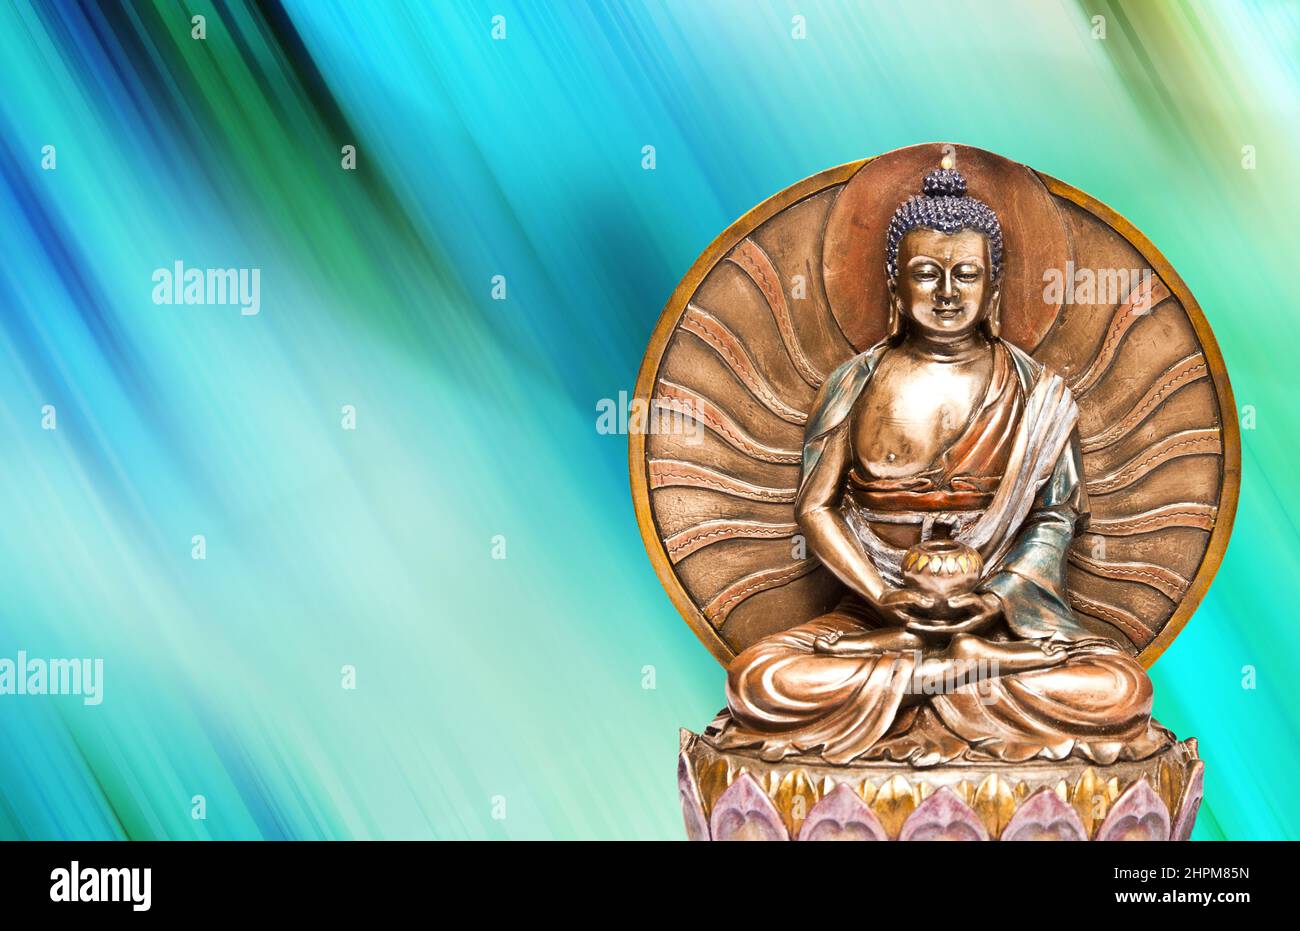 Statua del Buddha in stile thailandese con luce luminosa, serenità e concetto di meditazione Foto Stock